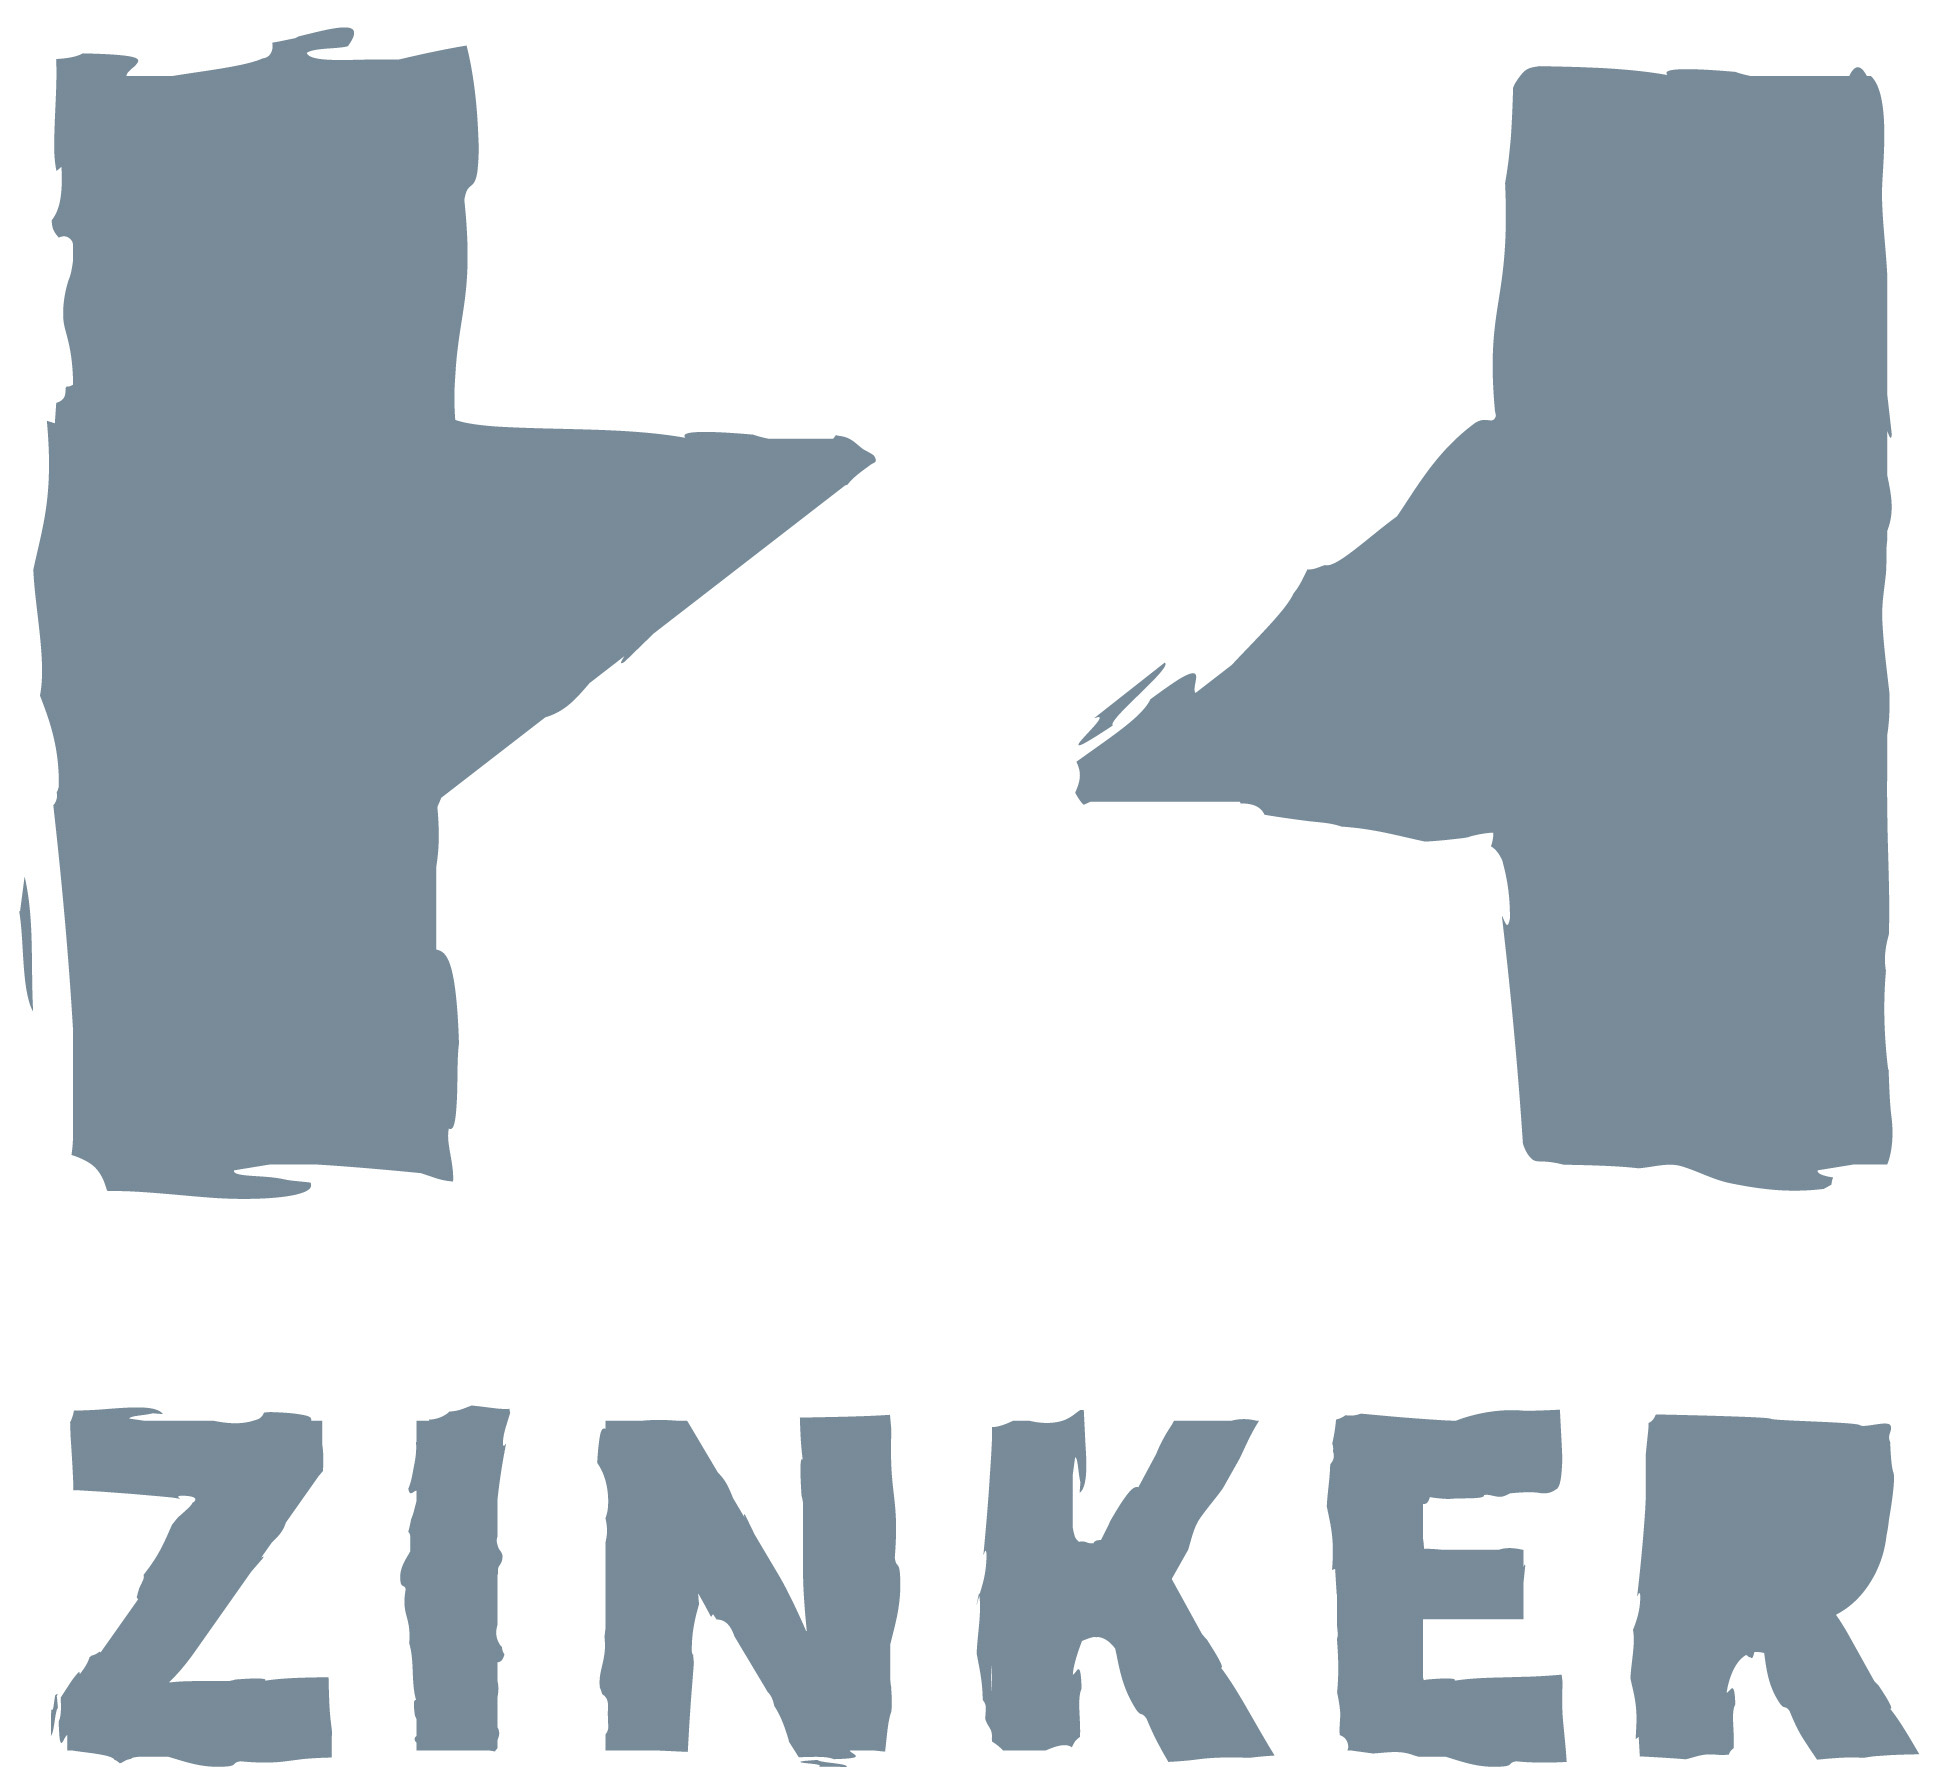 zinker logo 2